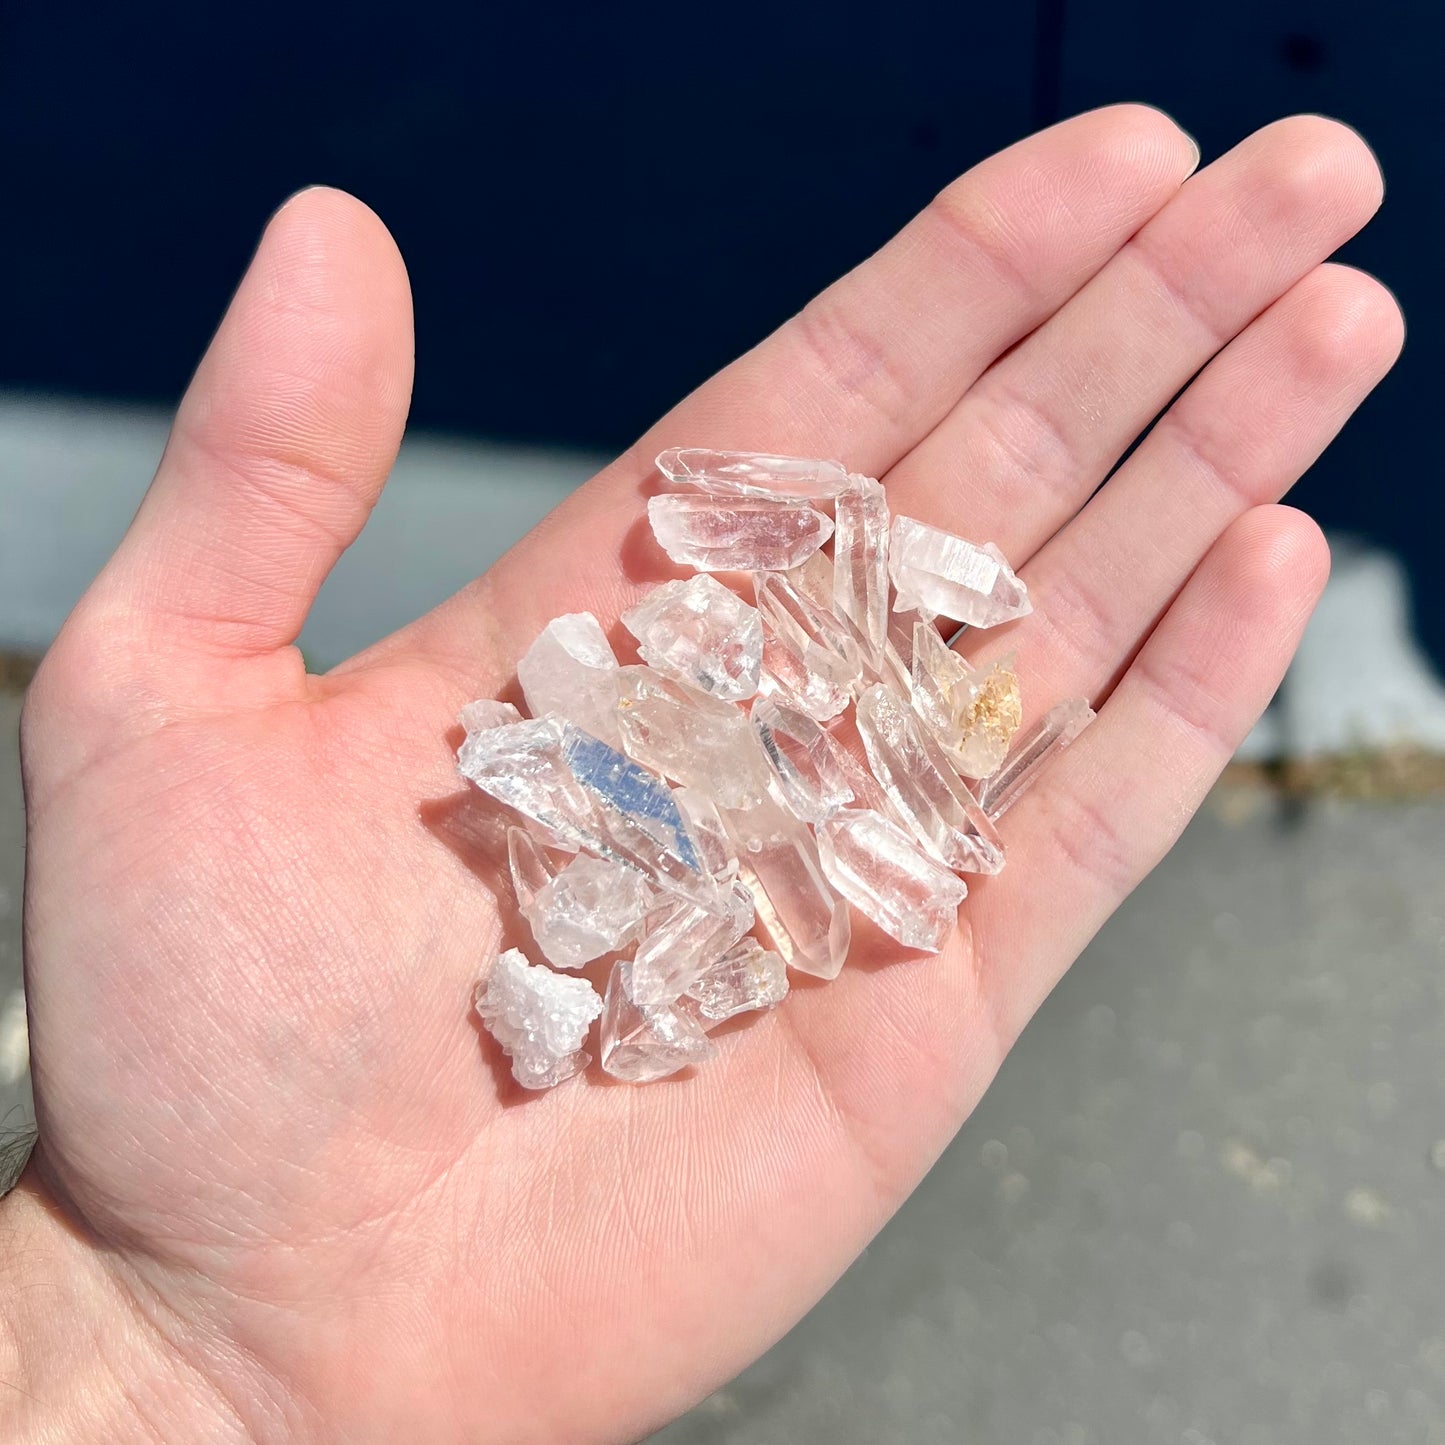 Mini Quartz Crystal Lot of 26 Pieces